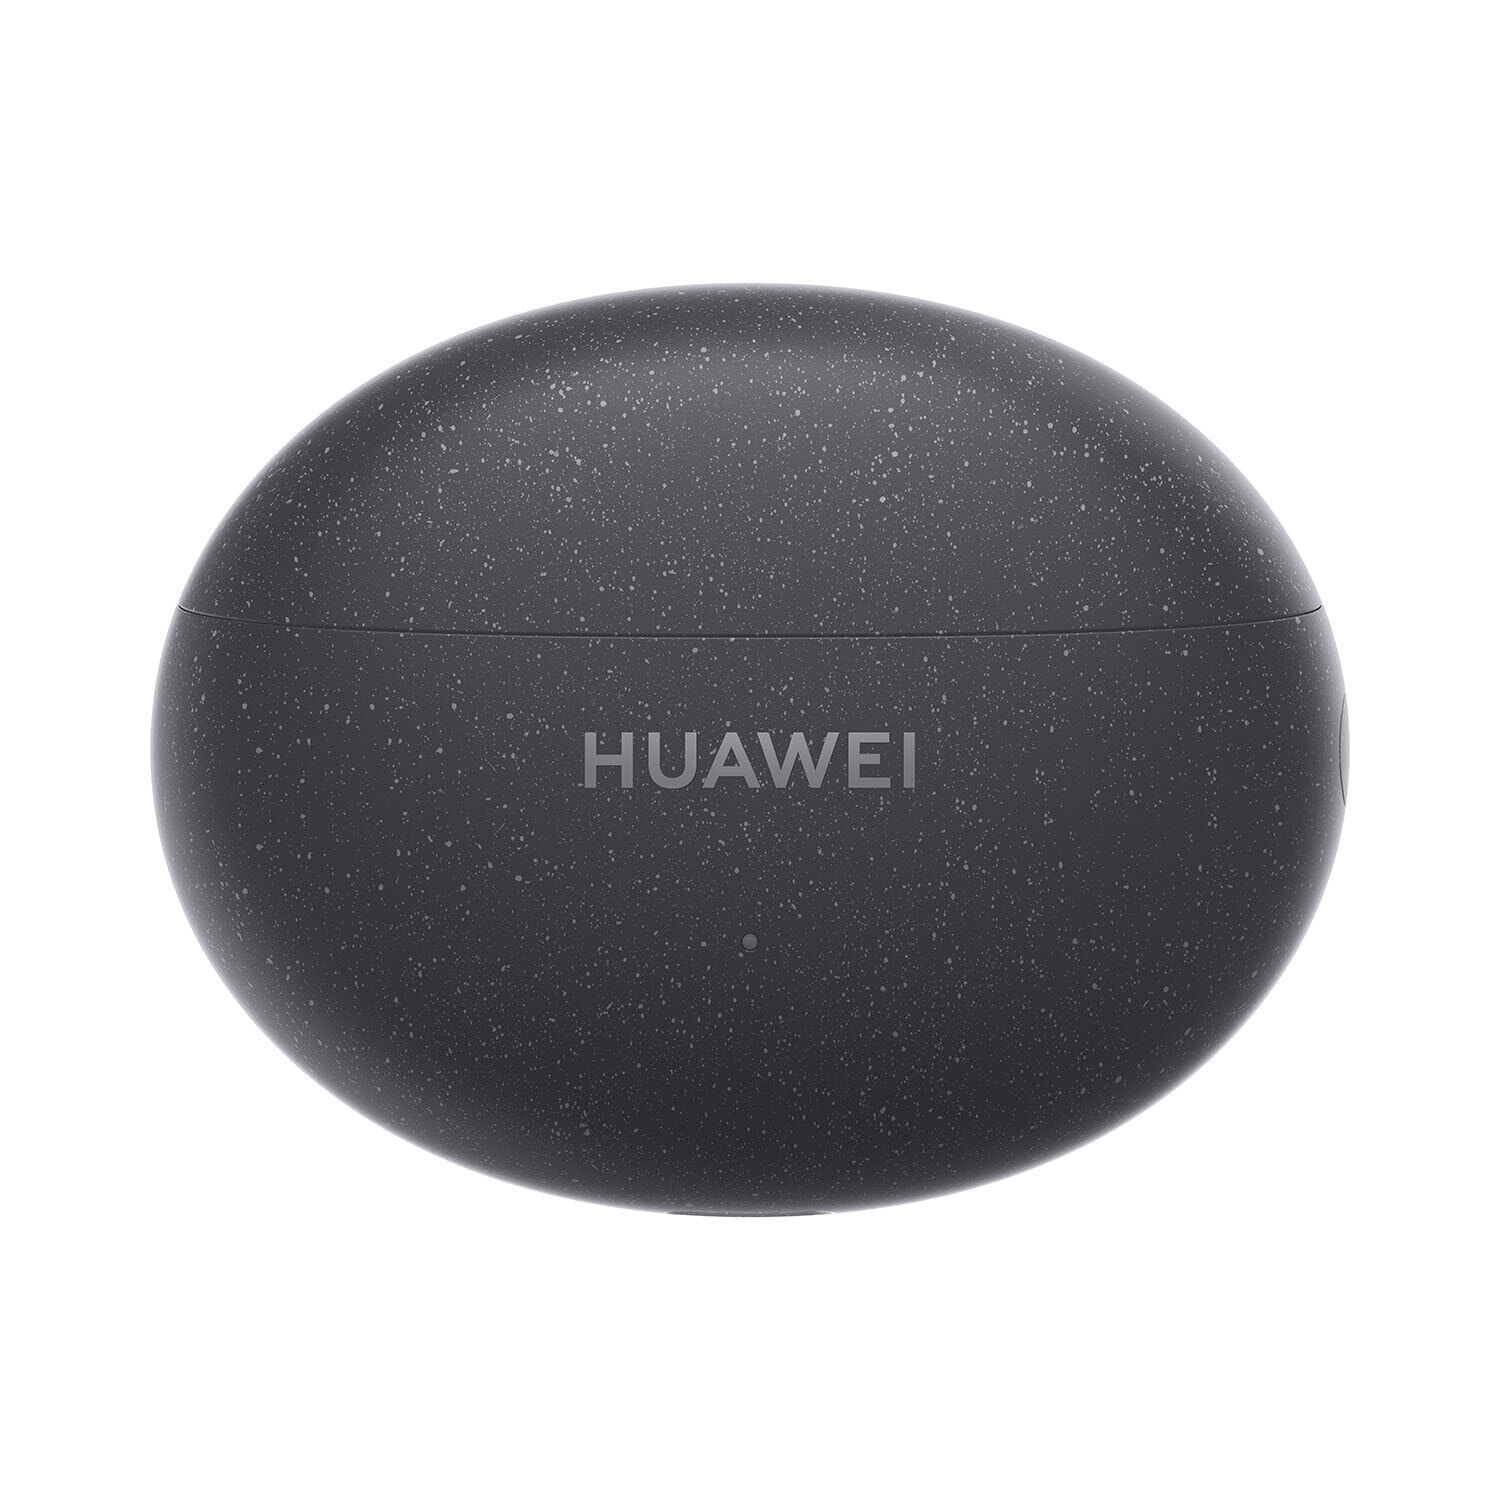 Huawei FreeBuds 5i Гарнитура True Wireless Stereo (TWS) Вкладыши Calls/Music Bluetooth Черный 55036653